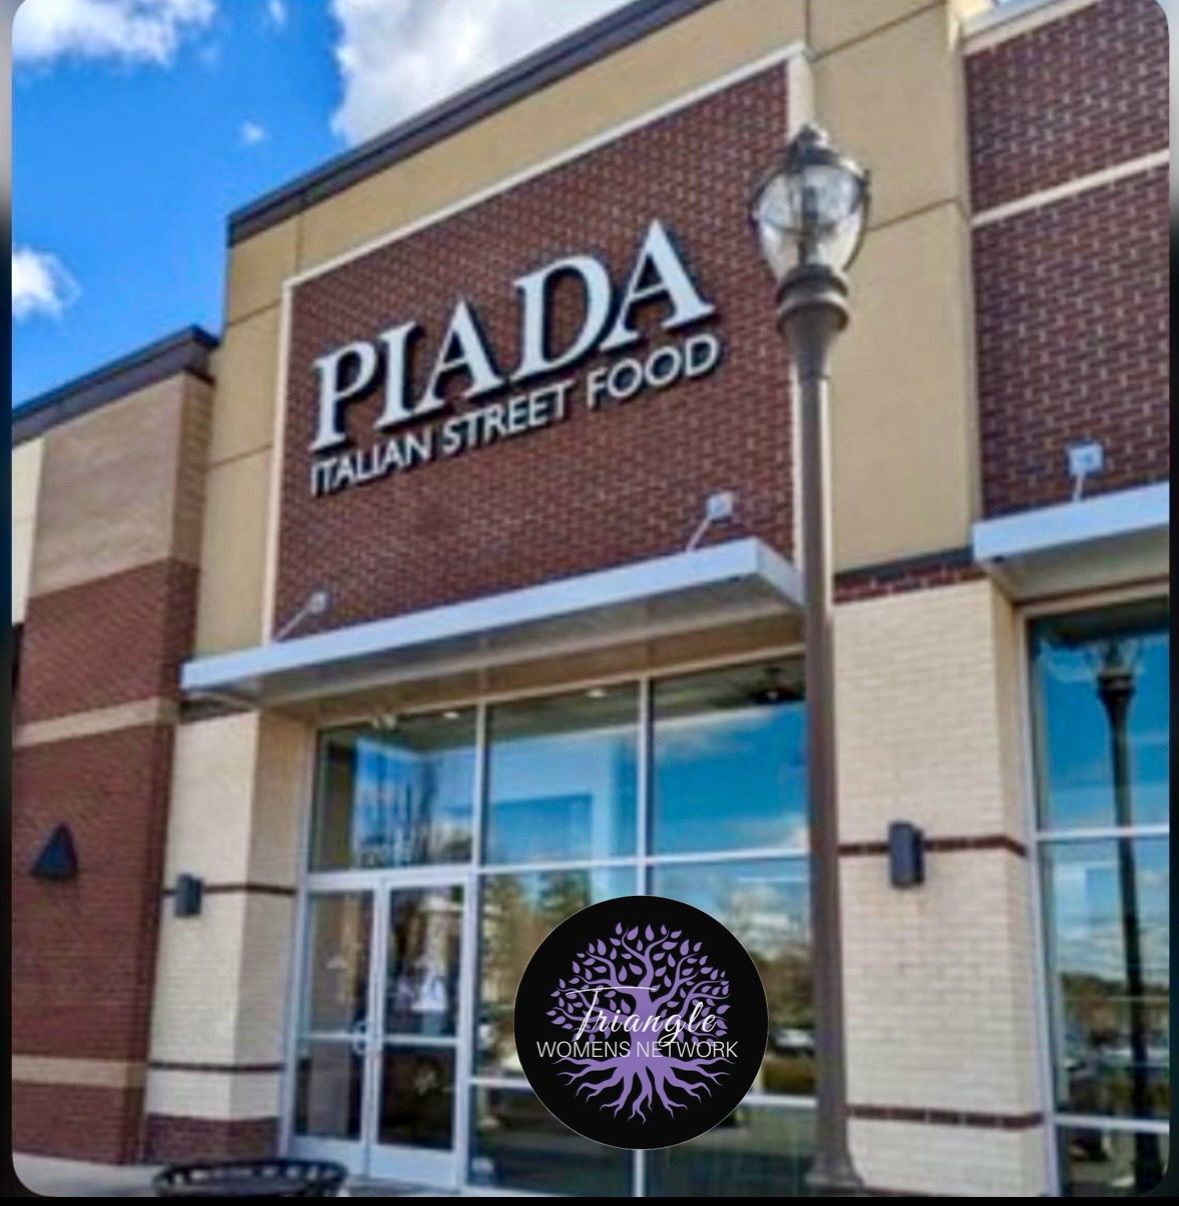 Piada Lunch Network & Social Meet Up 